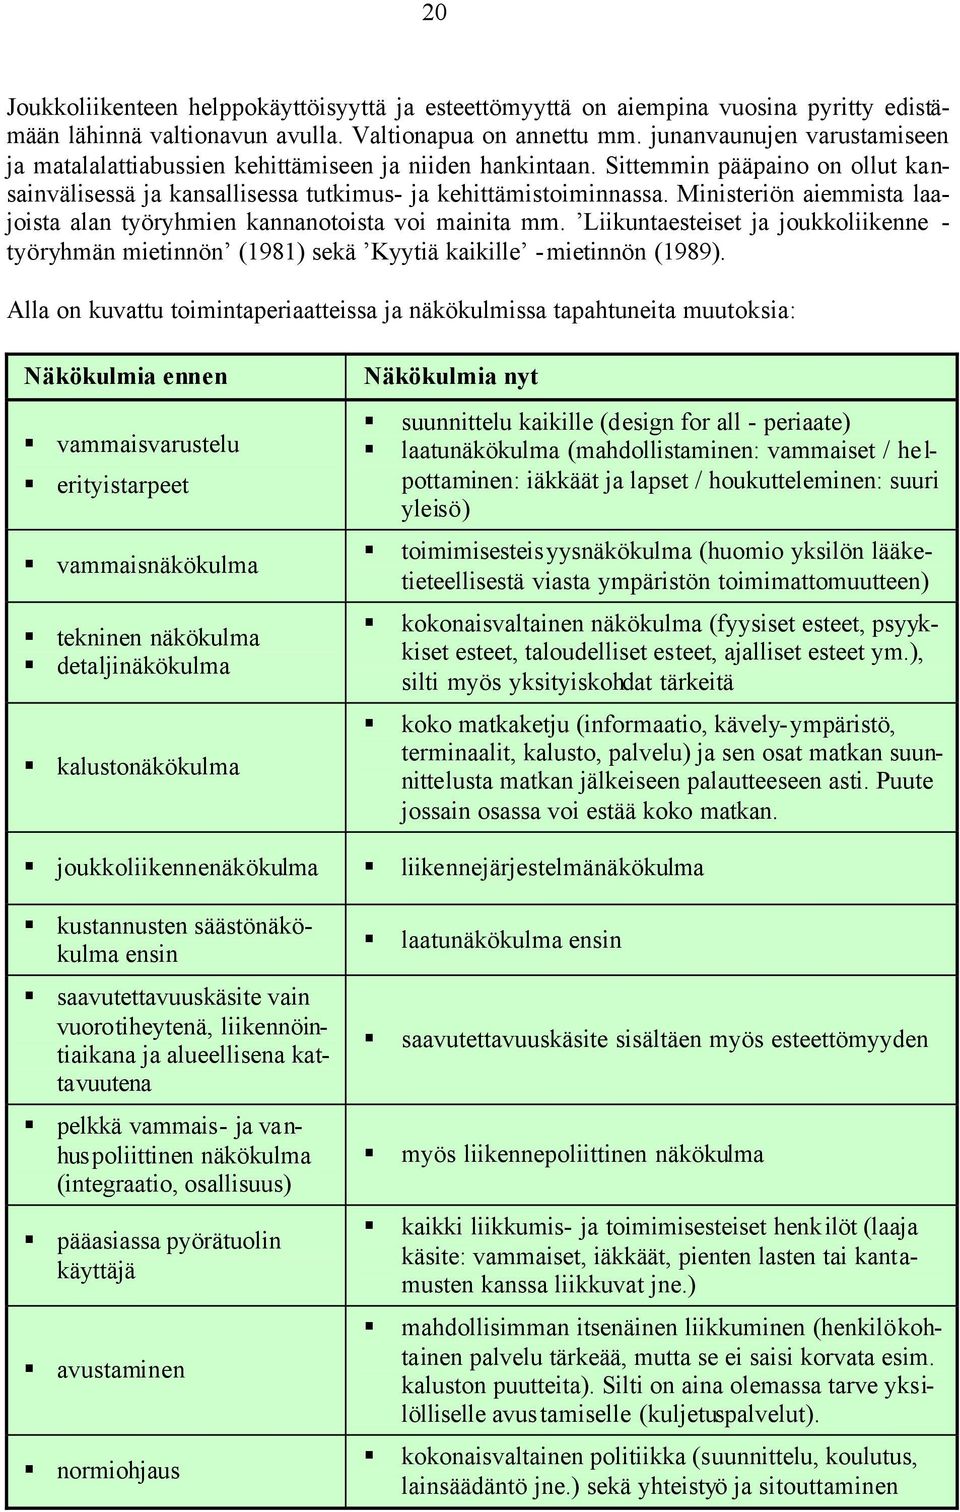 Ministeriön aiemmista laajoista alan työryhmien kannanotoista voi mainita mm. Liikuntaesteiset ja joukkoliikenne - työryhmän mietinnön (1981) sekä Kyytiä kaikille -mietinnön (1989).